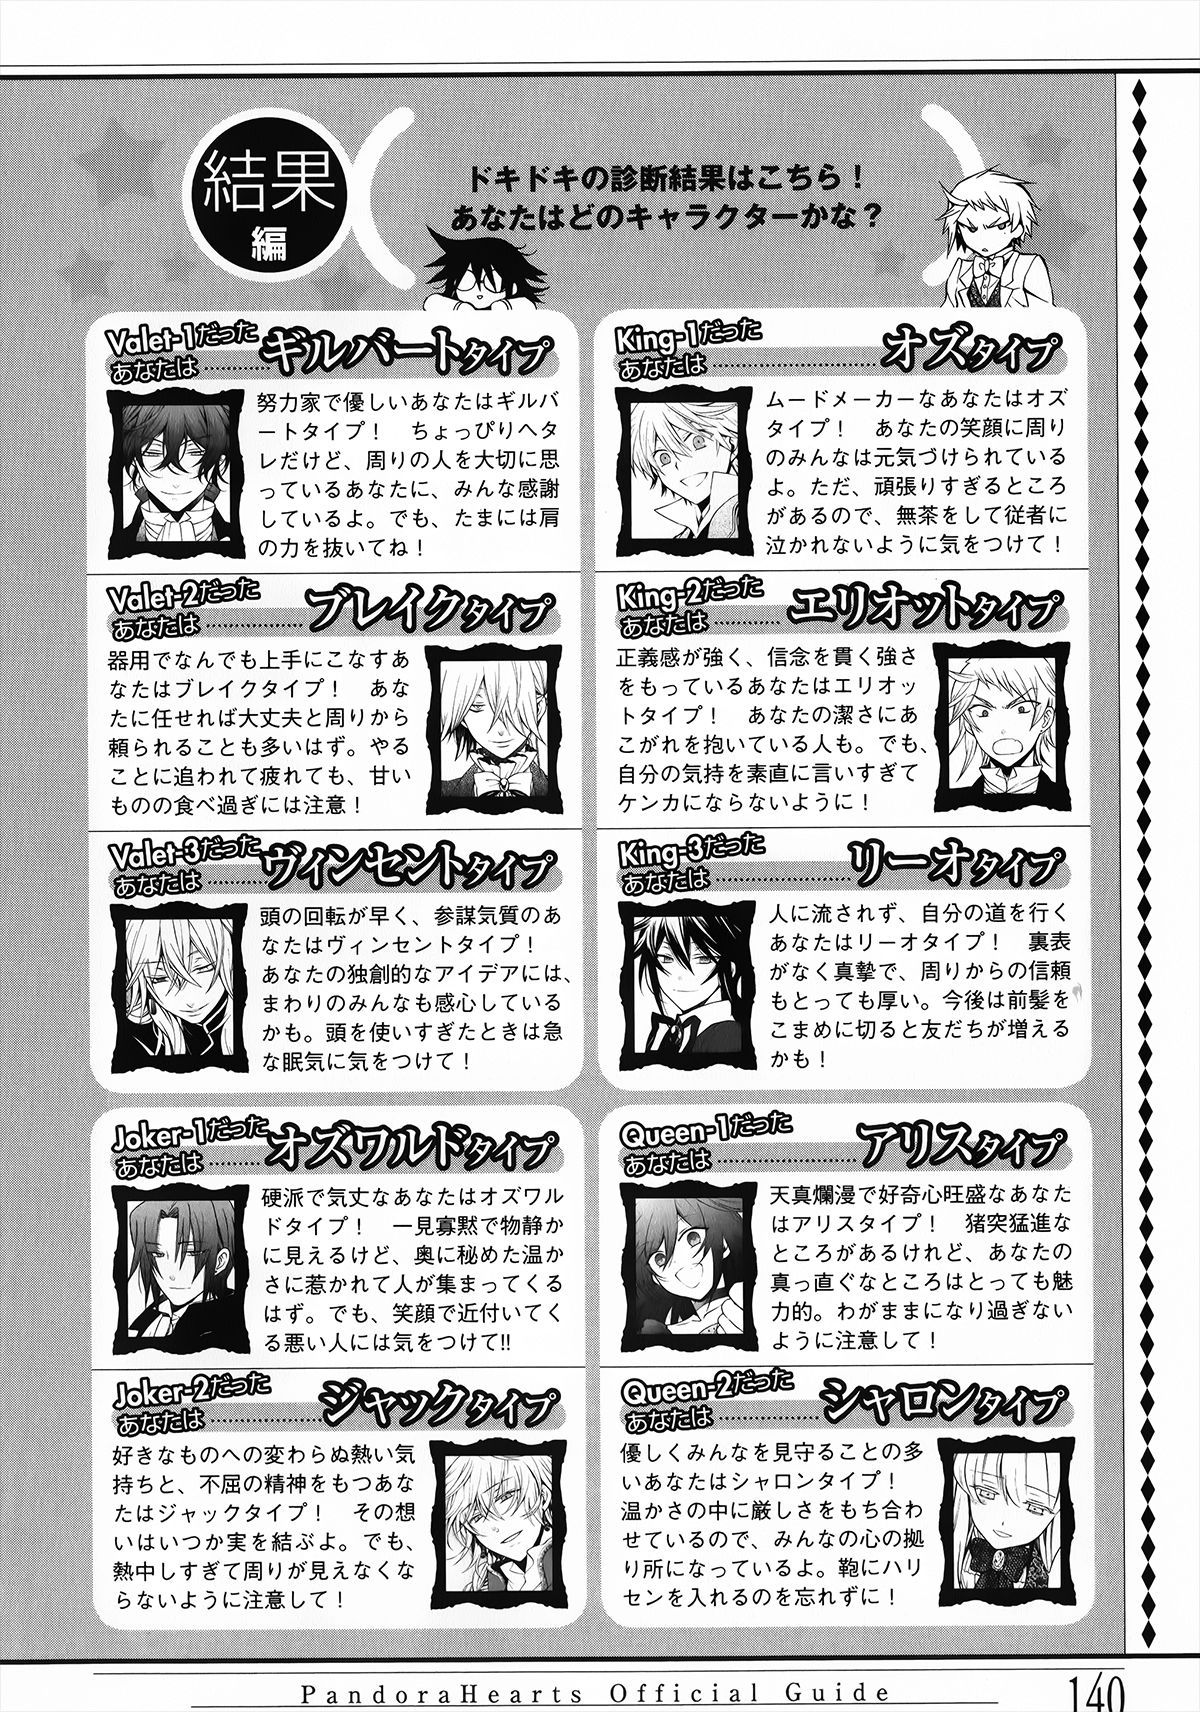 Pandora Hearts Guidebook 24+1: Last Dance パンドラハーツ オフィシャルガイド 24 + 1 ~Last Dance! 144